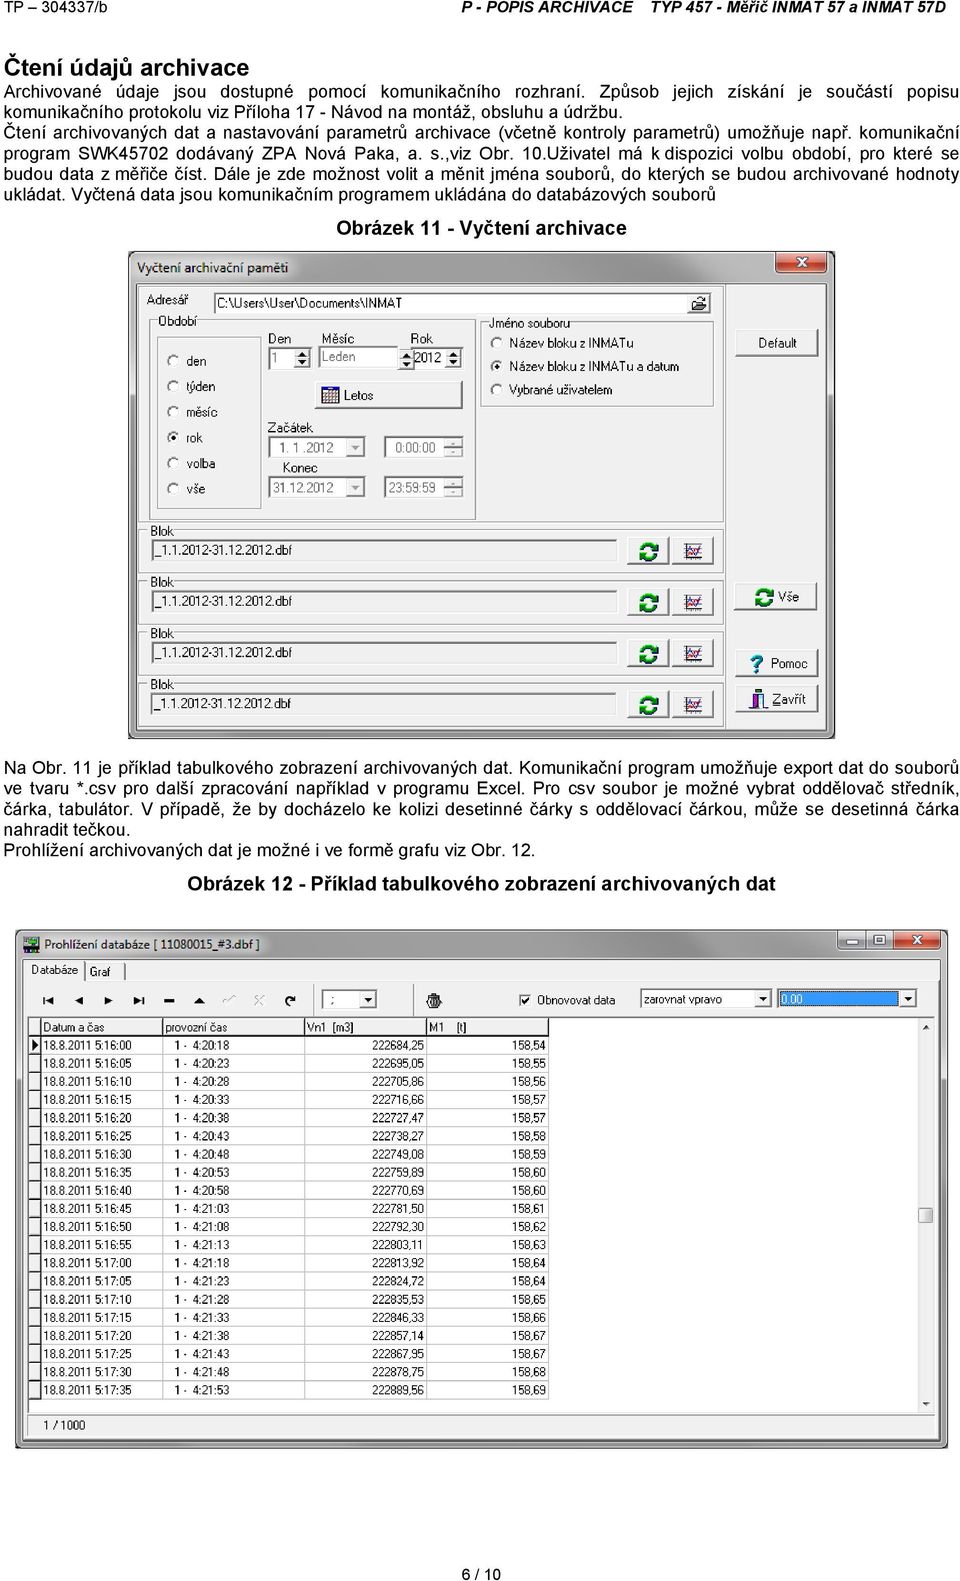 Čtení archivovaných dat a nastavování parametrů archivace (včetně kontroly parametrů) umožňuje např. komunikační program SWK45702 dodávaný ZPA Nová Paka, a. s.,viz Obr. 10.